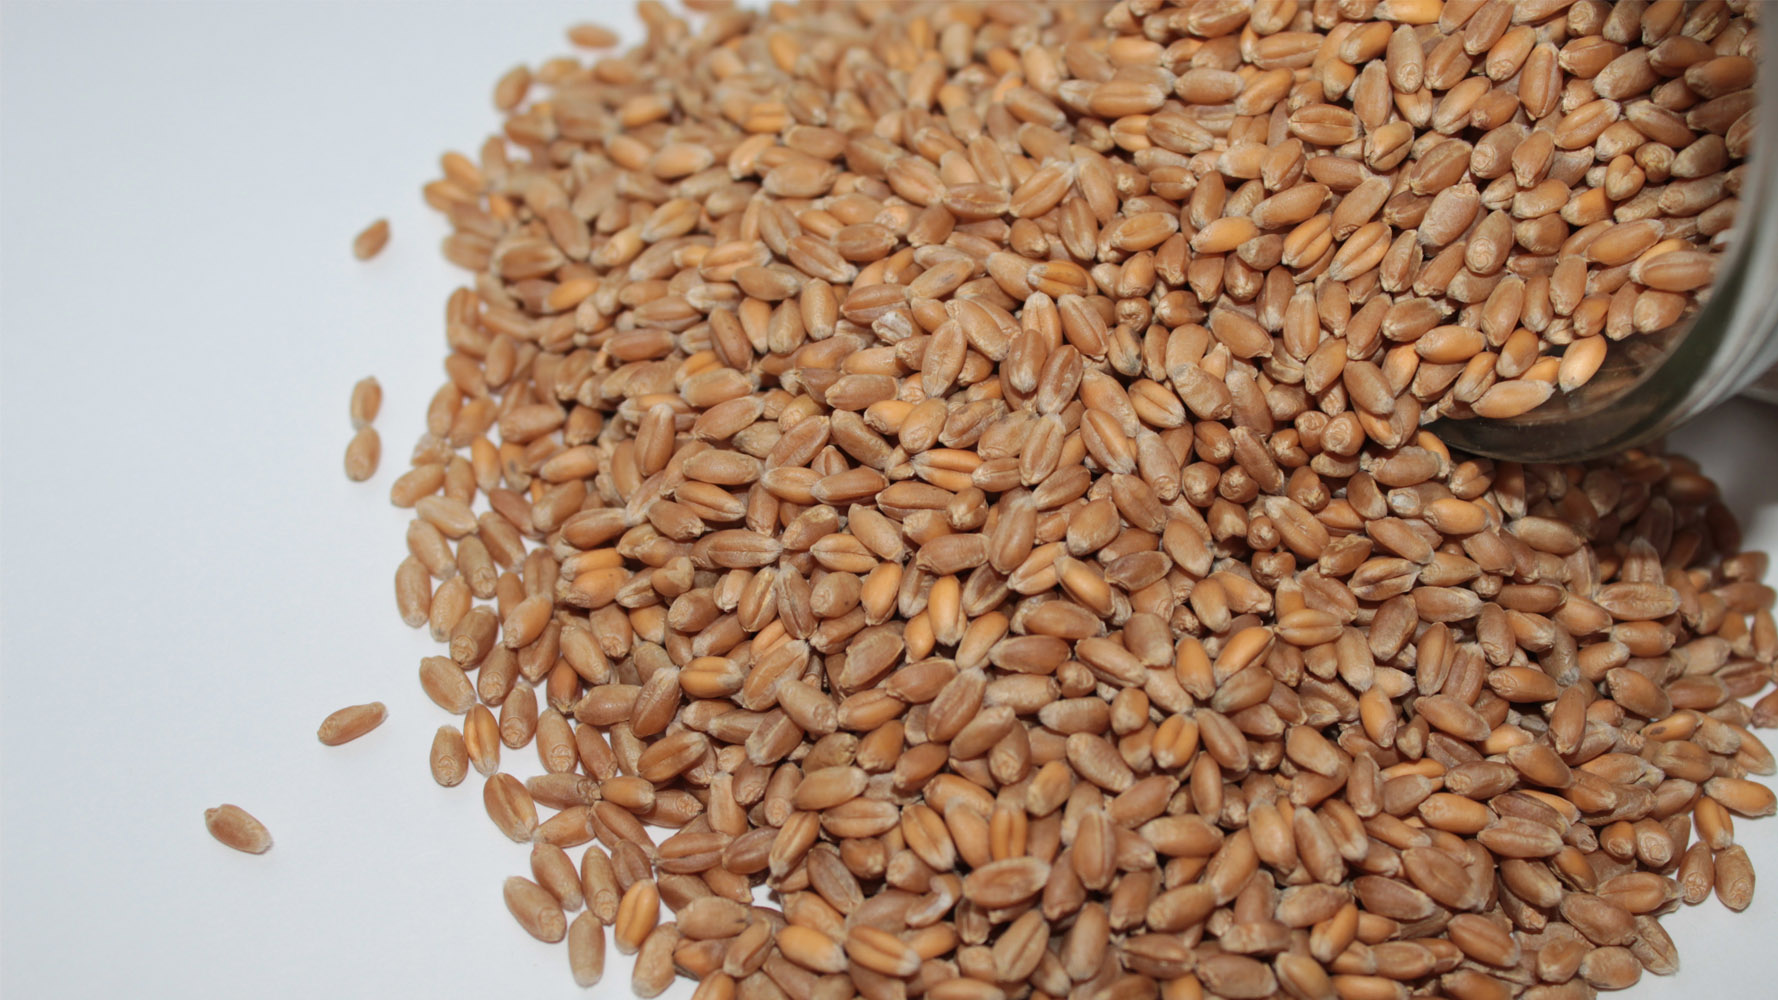 Buğday (Ekmeklik) tohumu sayfası, Buğday (Ekmeklik) tohumu resmi